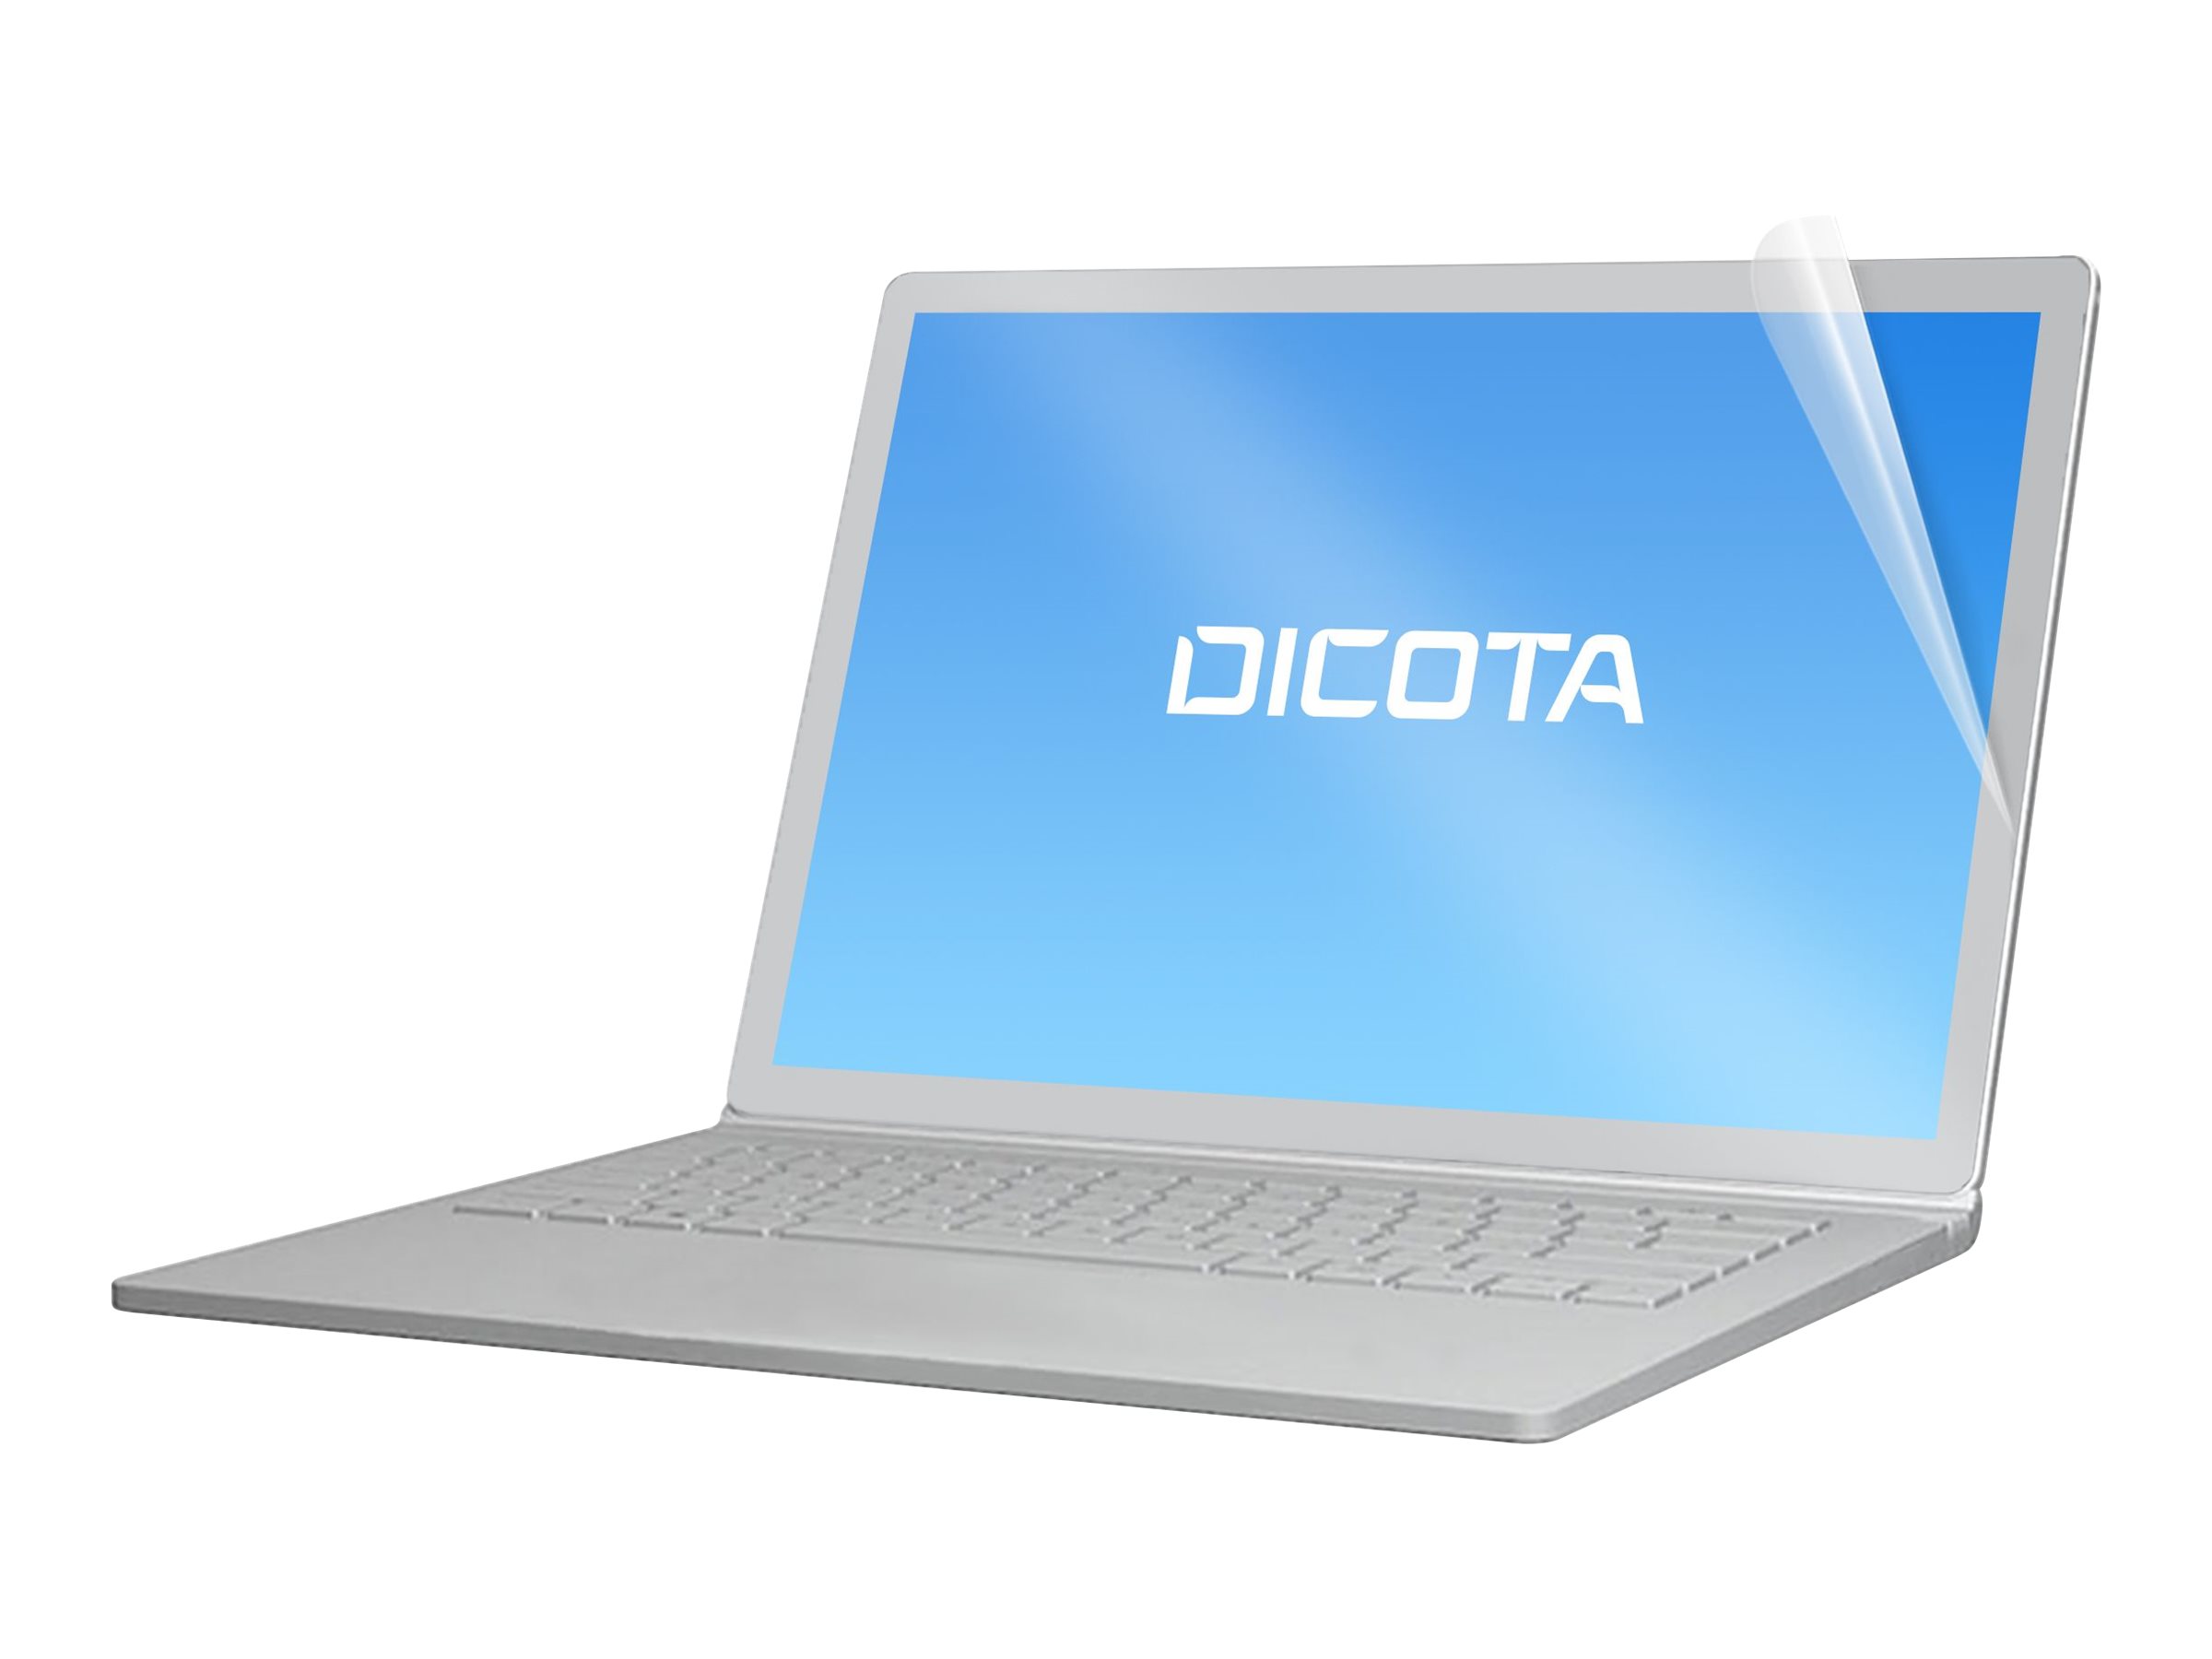 DICOTA - Filtre anti reflet pour ordinateur portable - transparent - pour Dell Latitude 7200 2-in-1 - D70180 - Accessoires pour écran